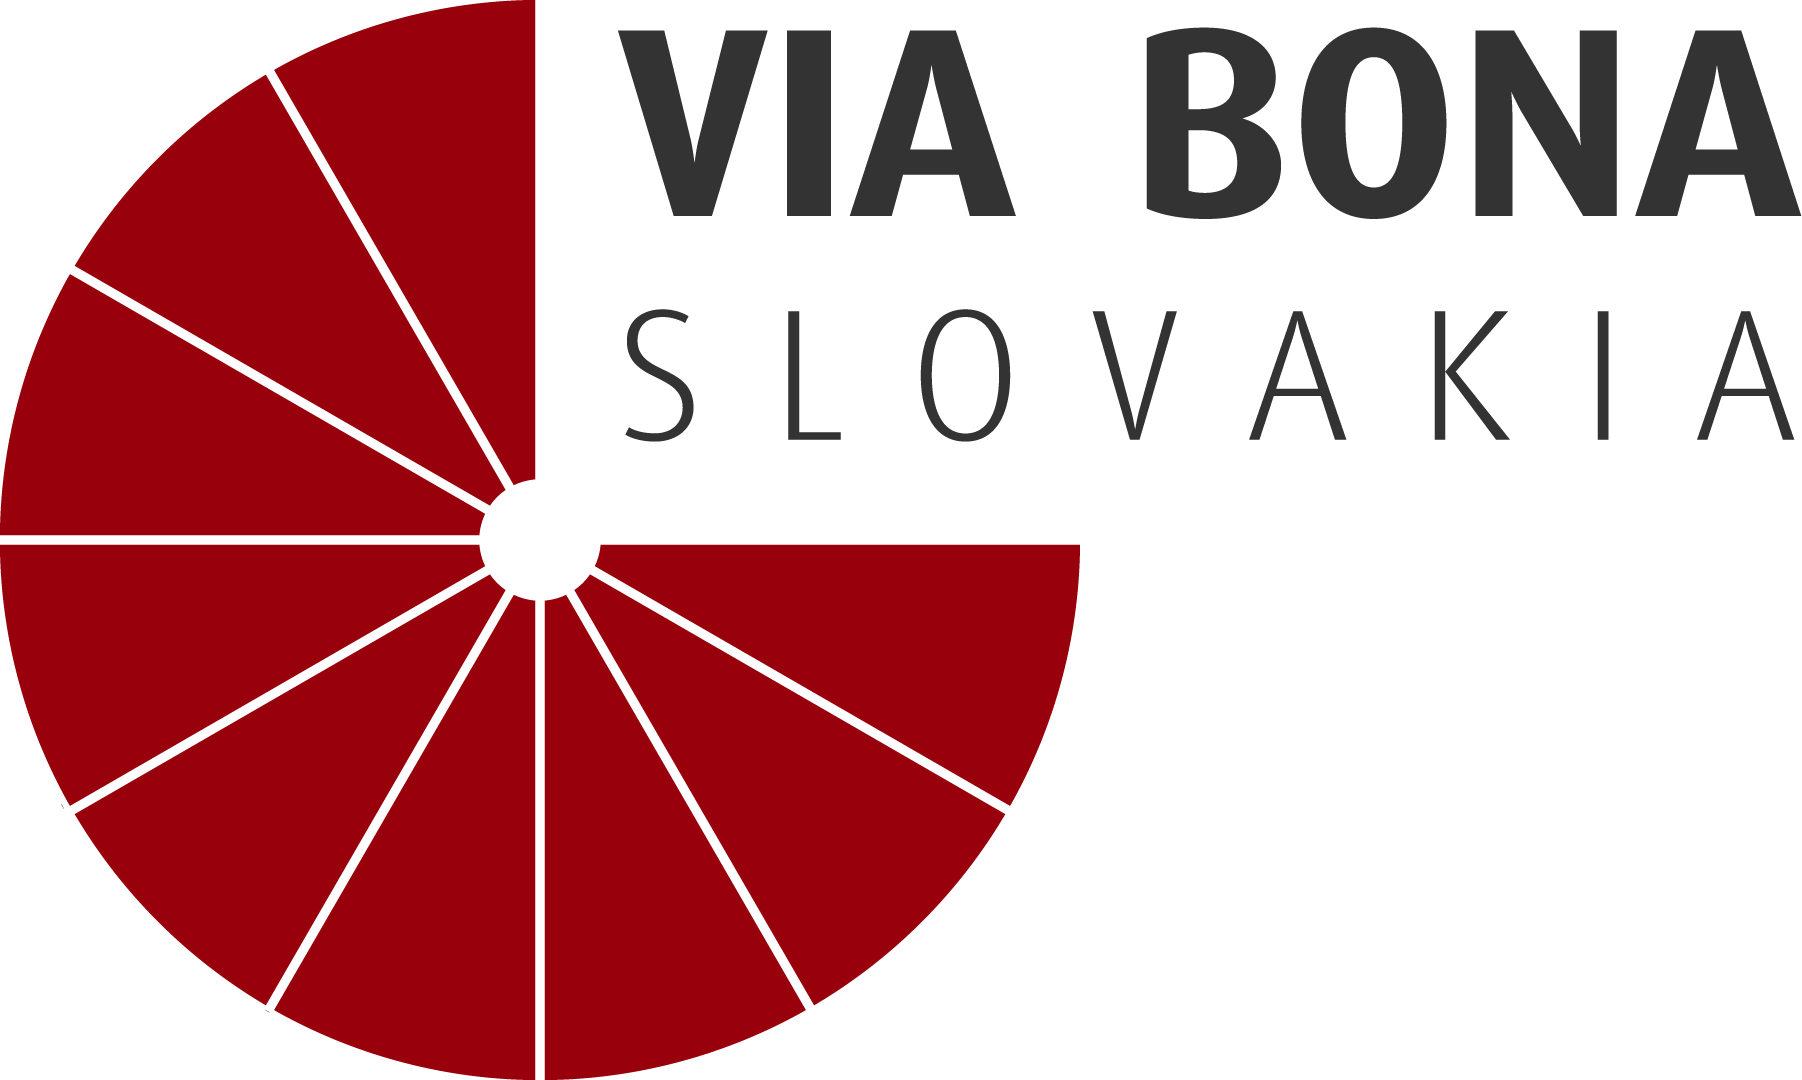 O Via Bone logo